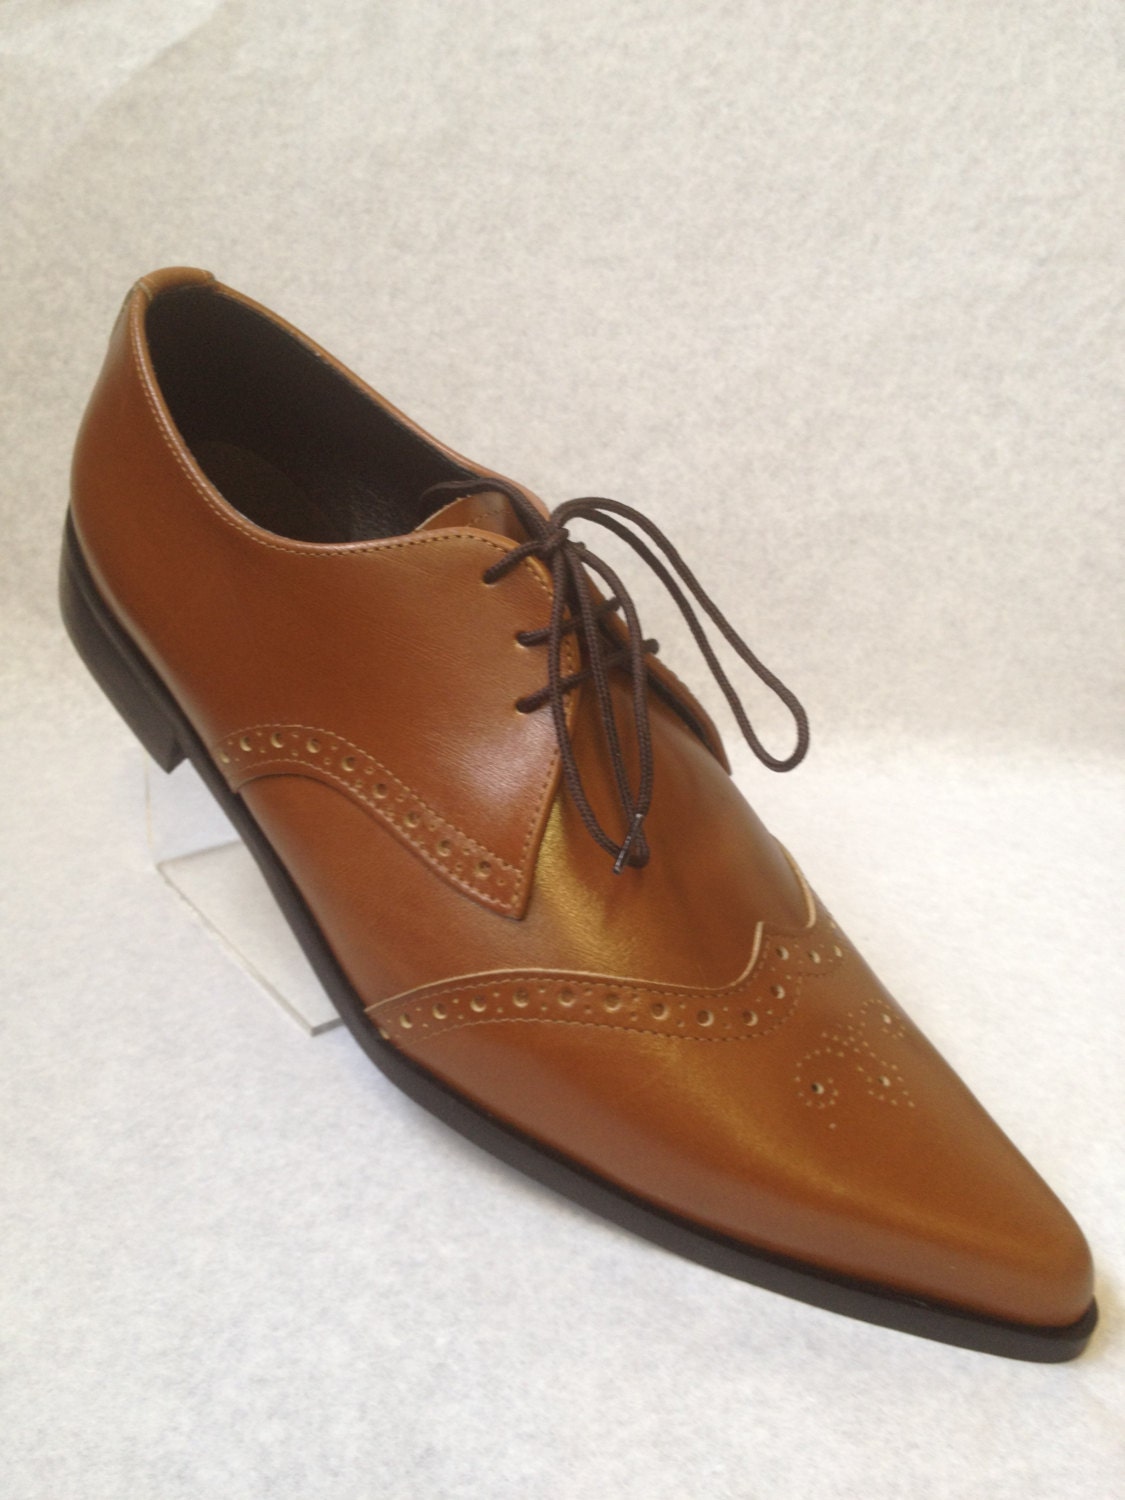 Bugsy Brogue Winklepicker Shoe in Tan Leather